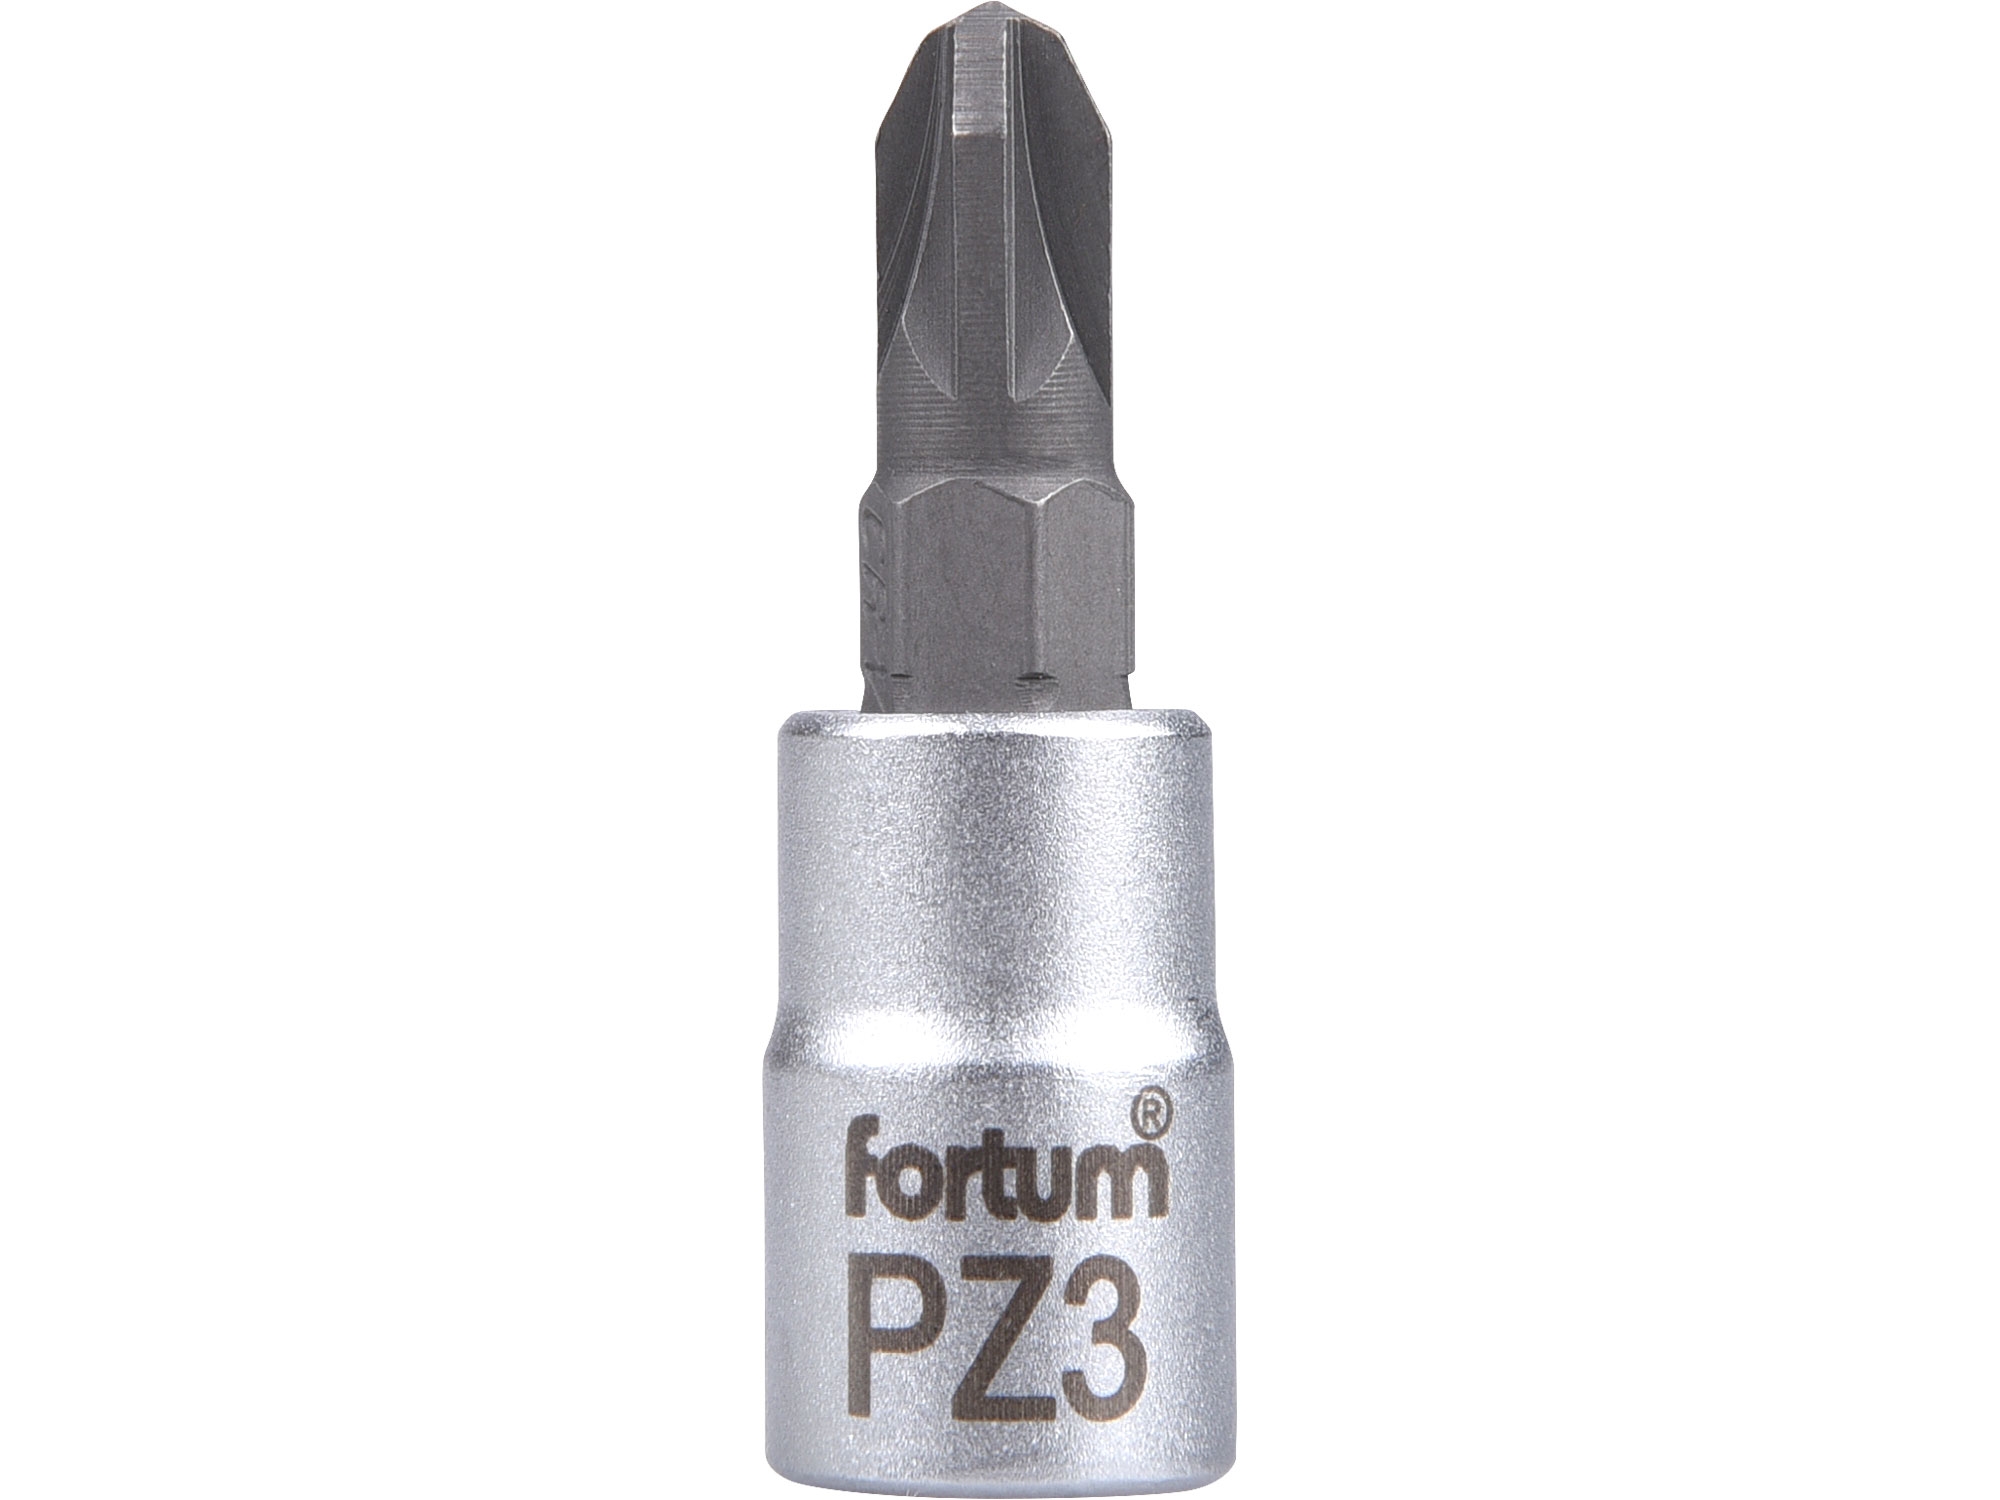 hlavice zástrčná 1/4" hrot pozidriv, PZ 3, L 37mm - FORTUM